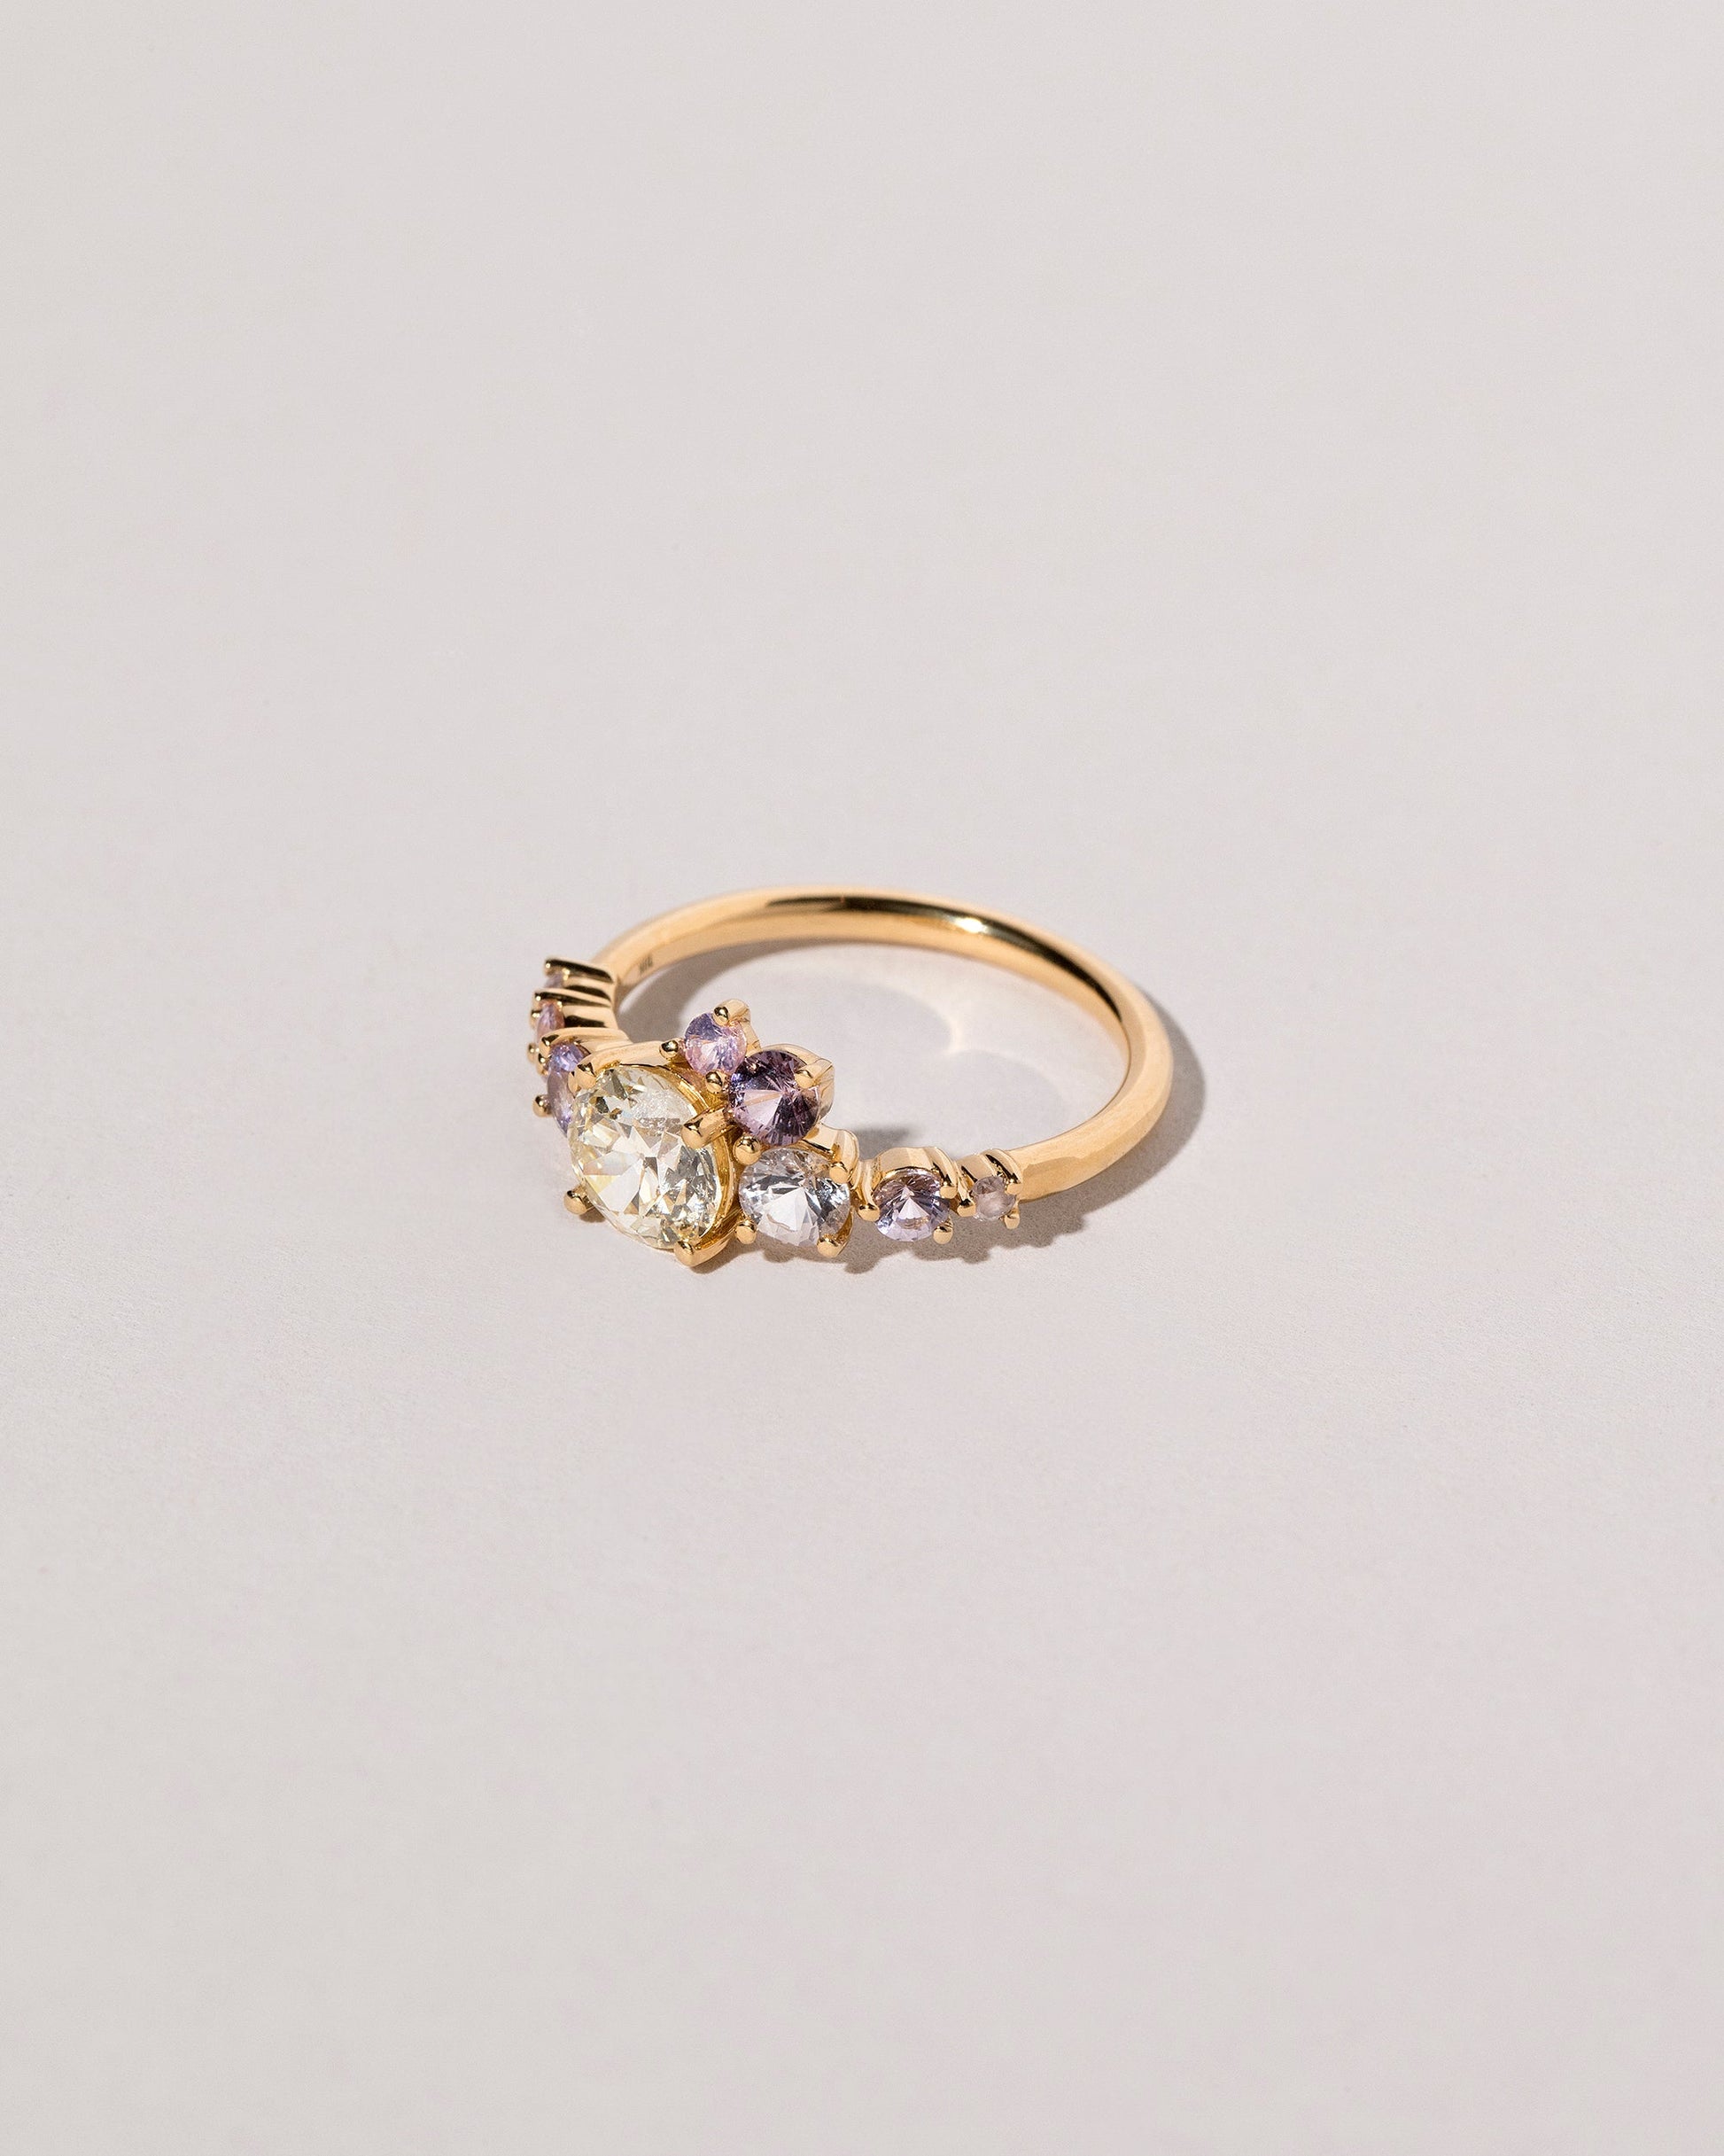  Viola Ring on light color background.